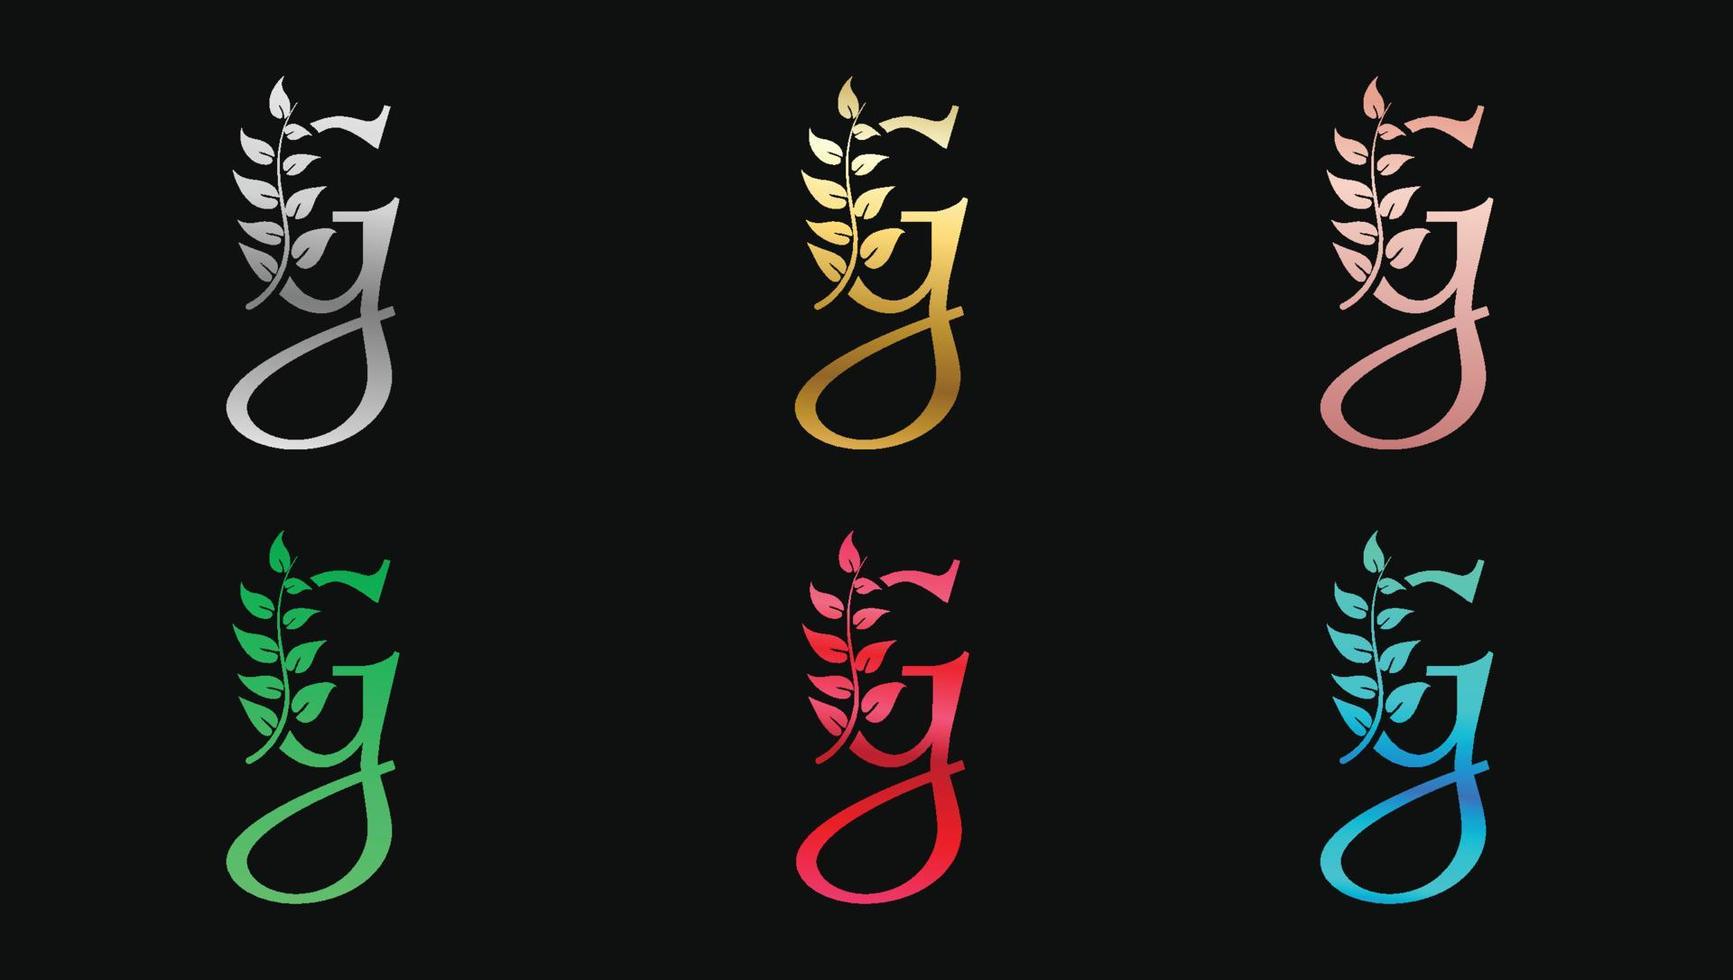 dekorativer buchstabe g in metallischen farben nennt anfängliche moderne logo-design-vorlage vektor